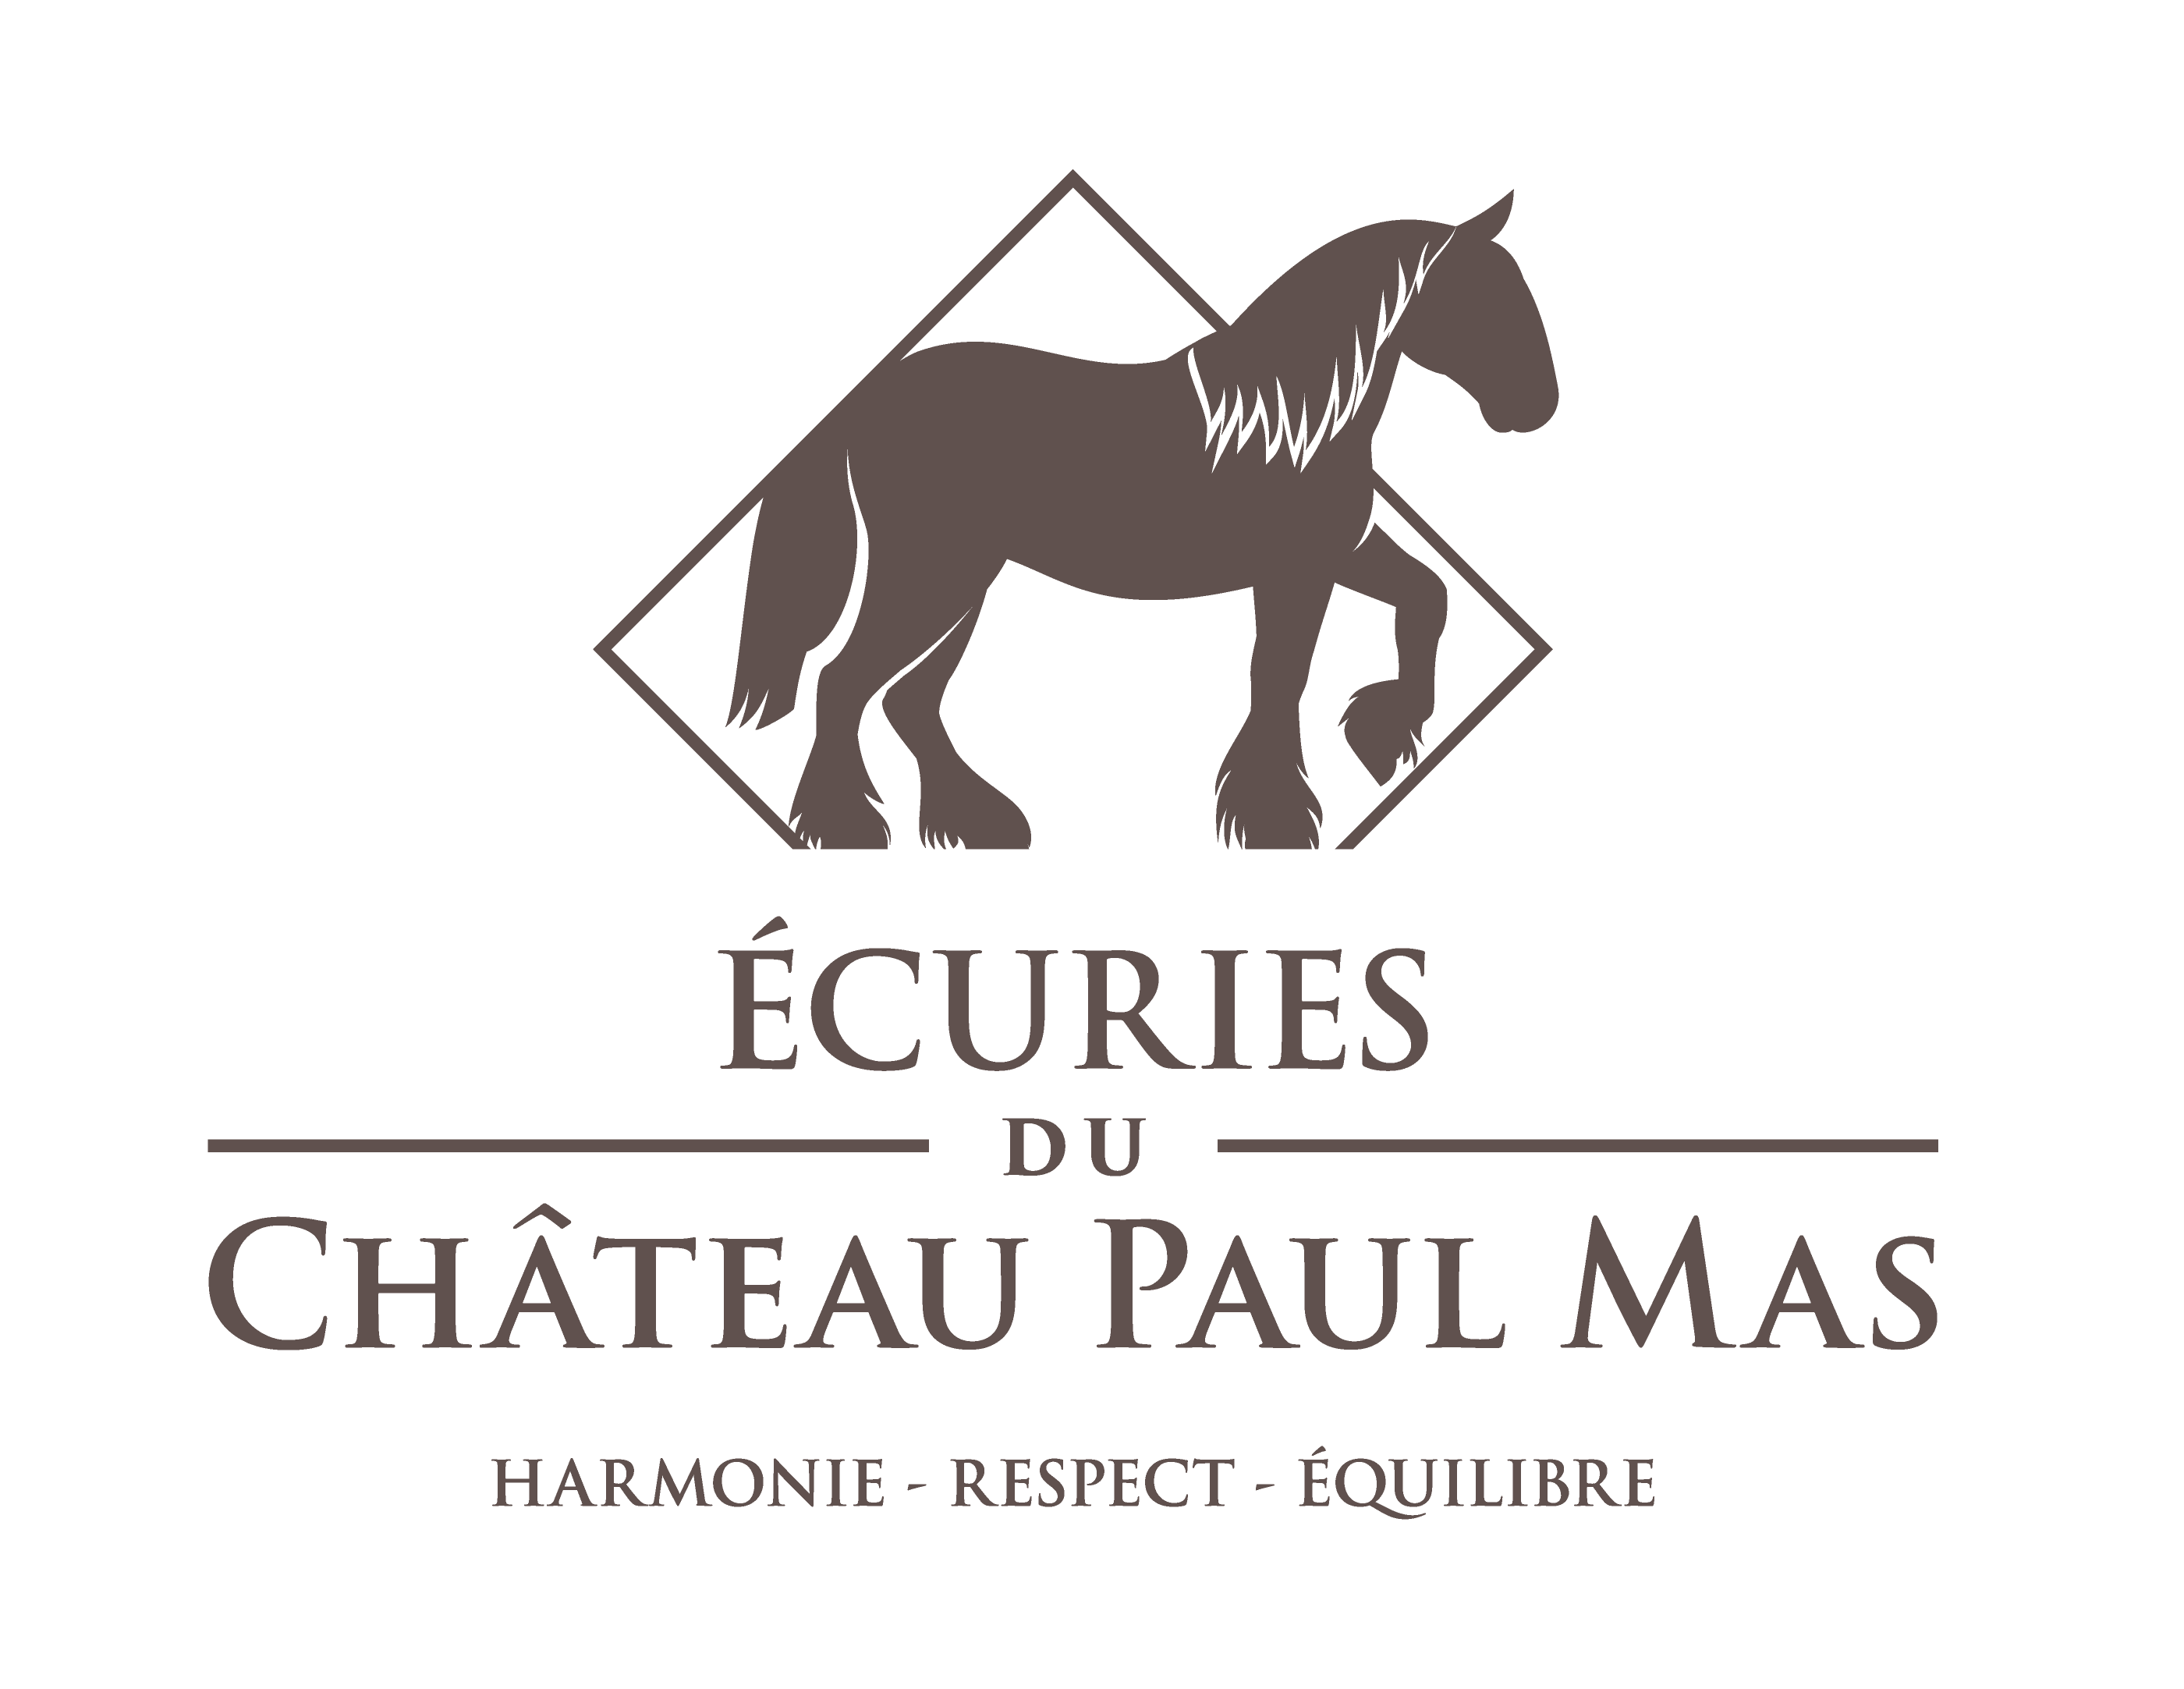 Les Ecuries du Château Paul Mas